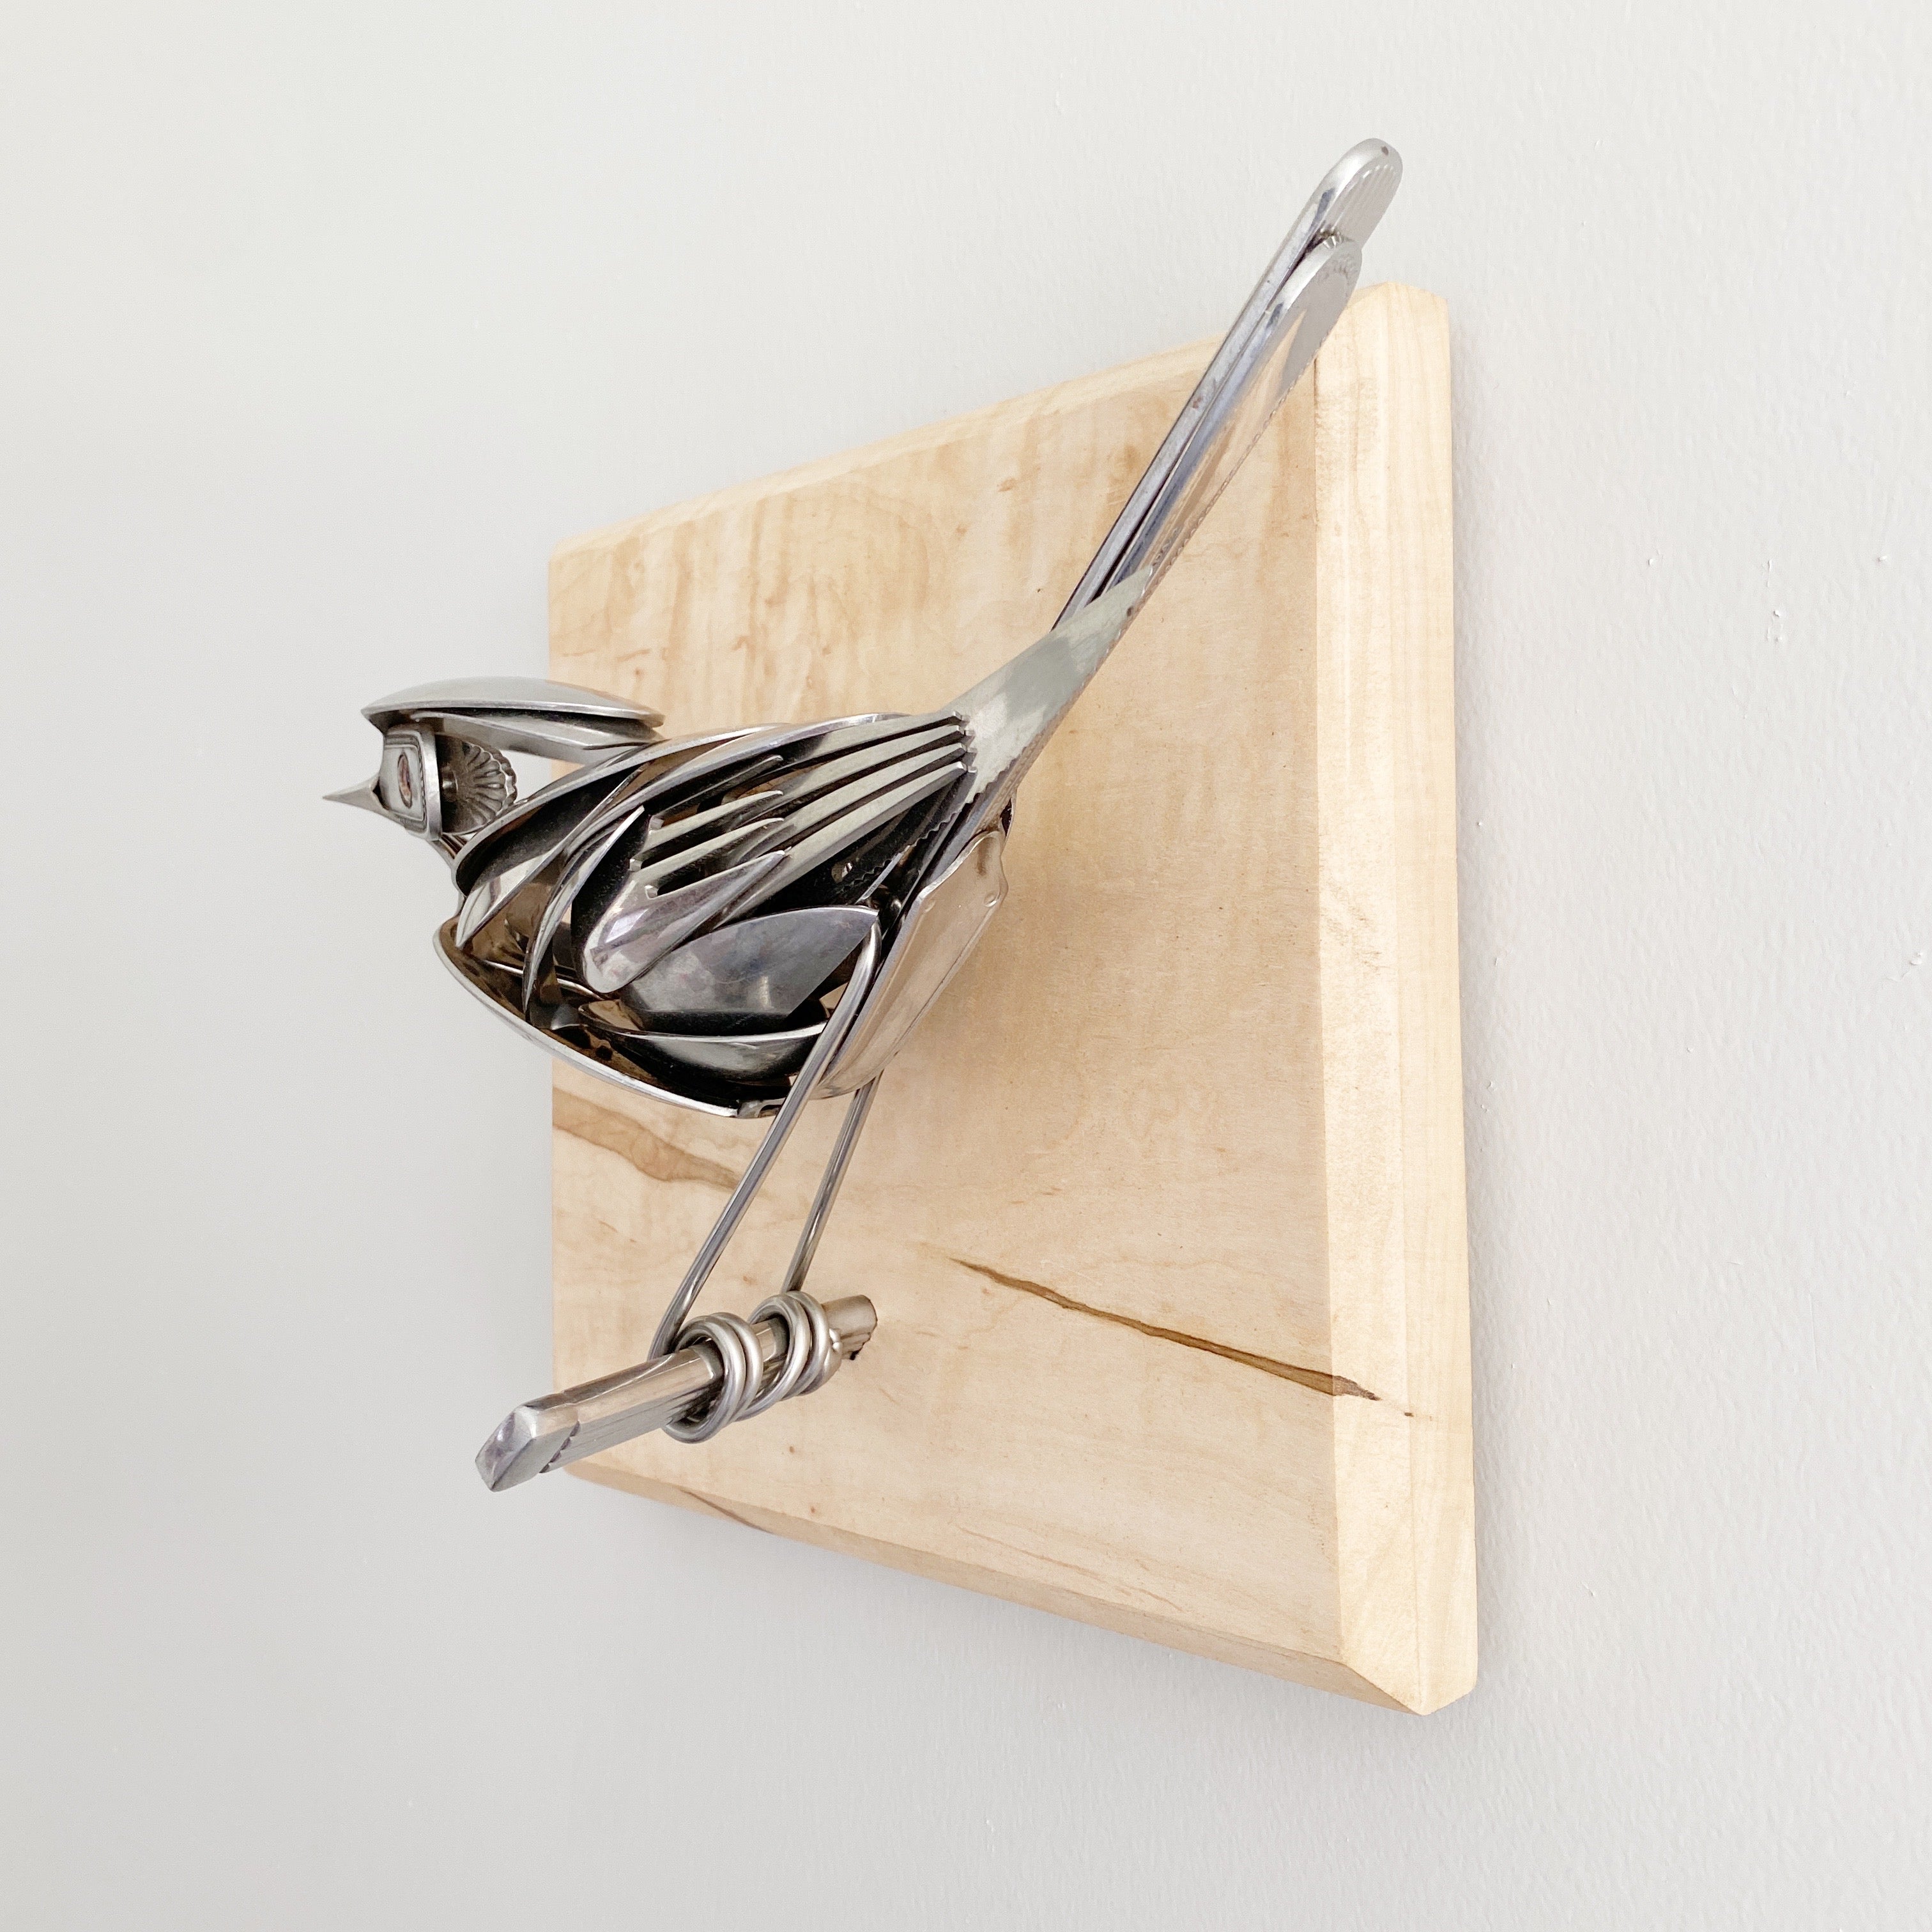 "Manuela" - Upcycled Metal Bird Sculpture